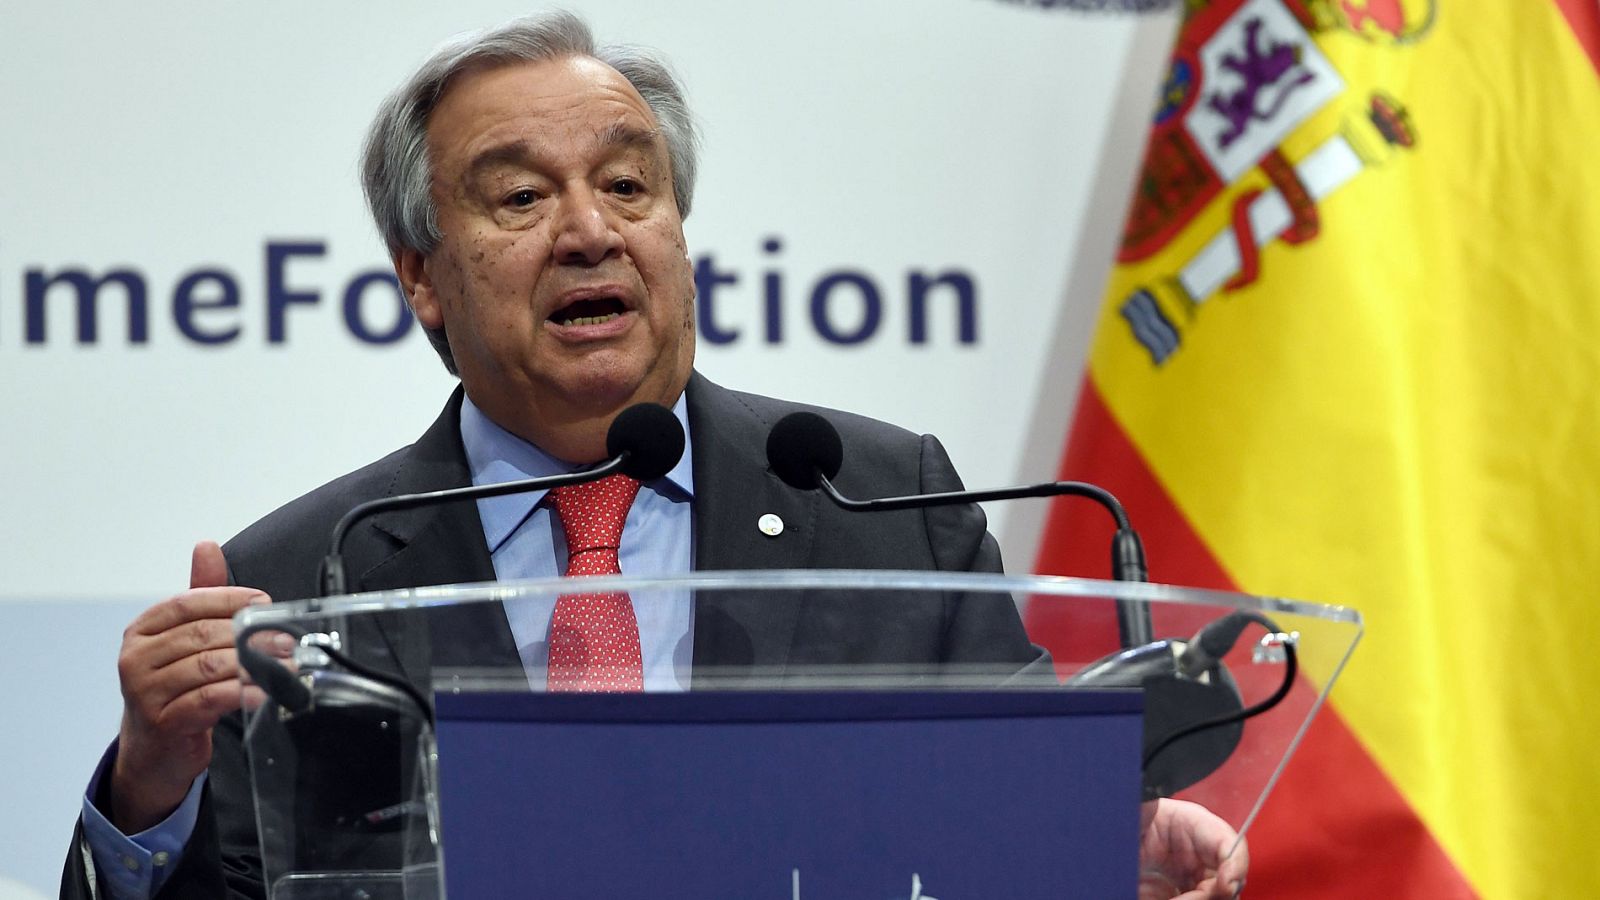 Cumbre del Clima de Madrid: Guterres pide "completar la regulación" de los mercados de carbono - RTVE.es